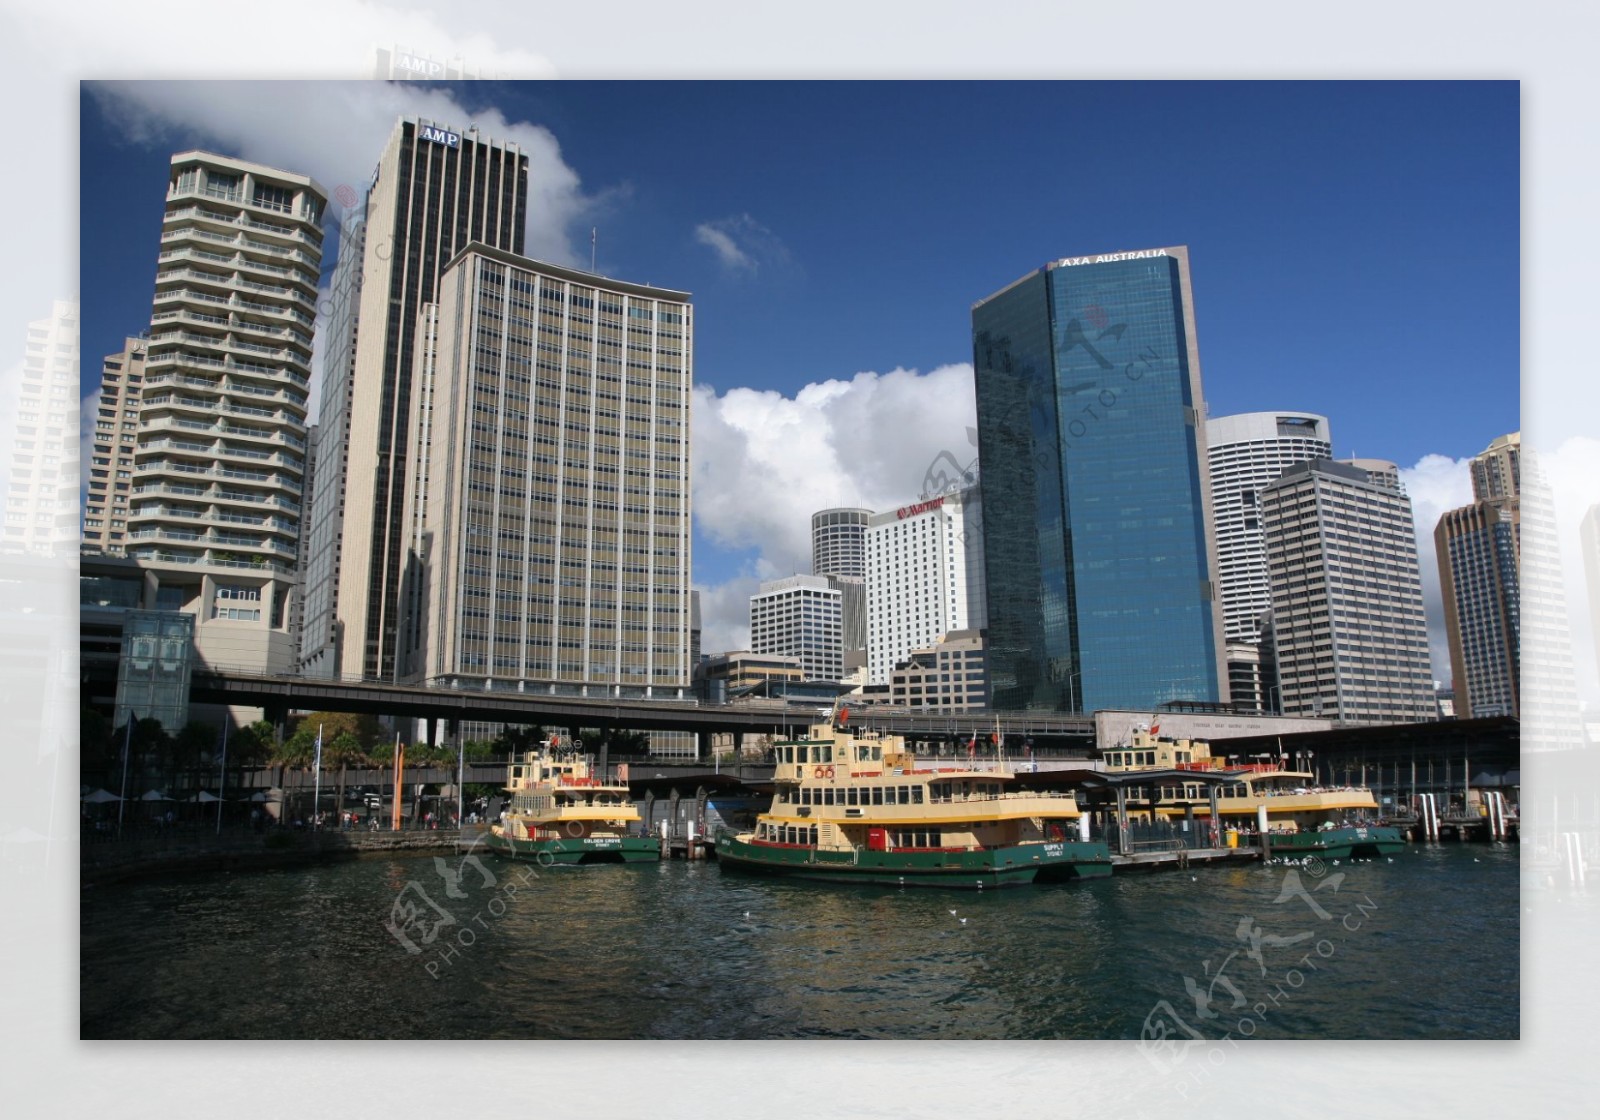 悉尼环形码头图片